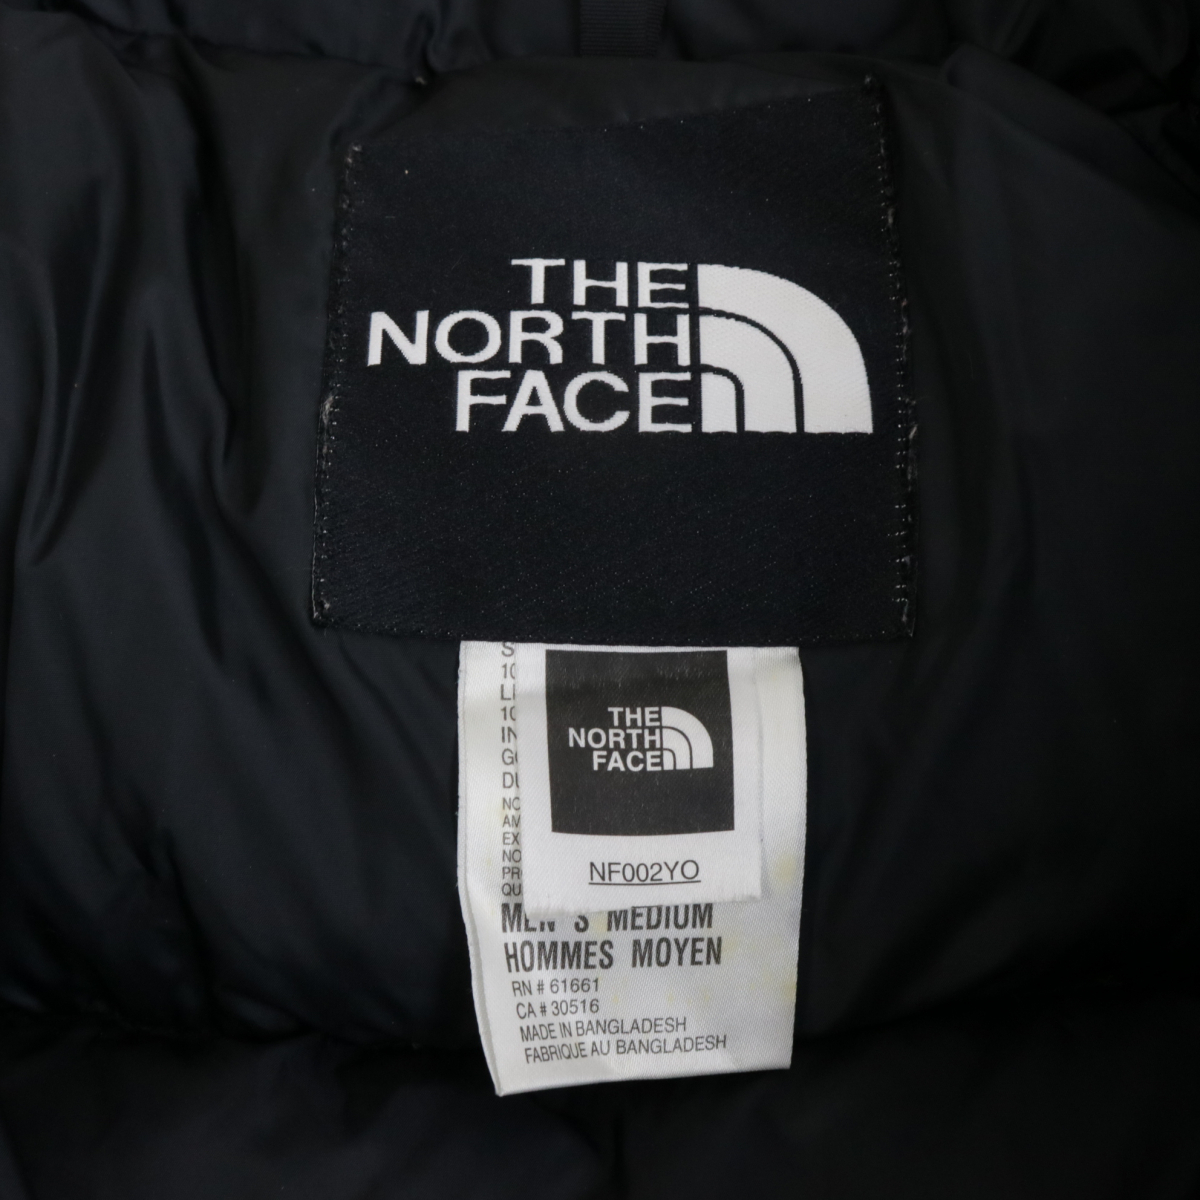 THE NORTH FACE NF0O2YO ダウンジャケット ザノースフェイス ブランド品 アウトドア ランニング オシャレ ファッション 010FEEFR83_画像9